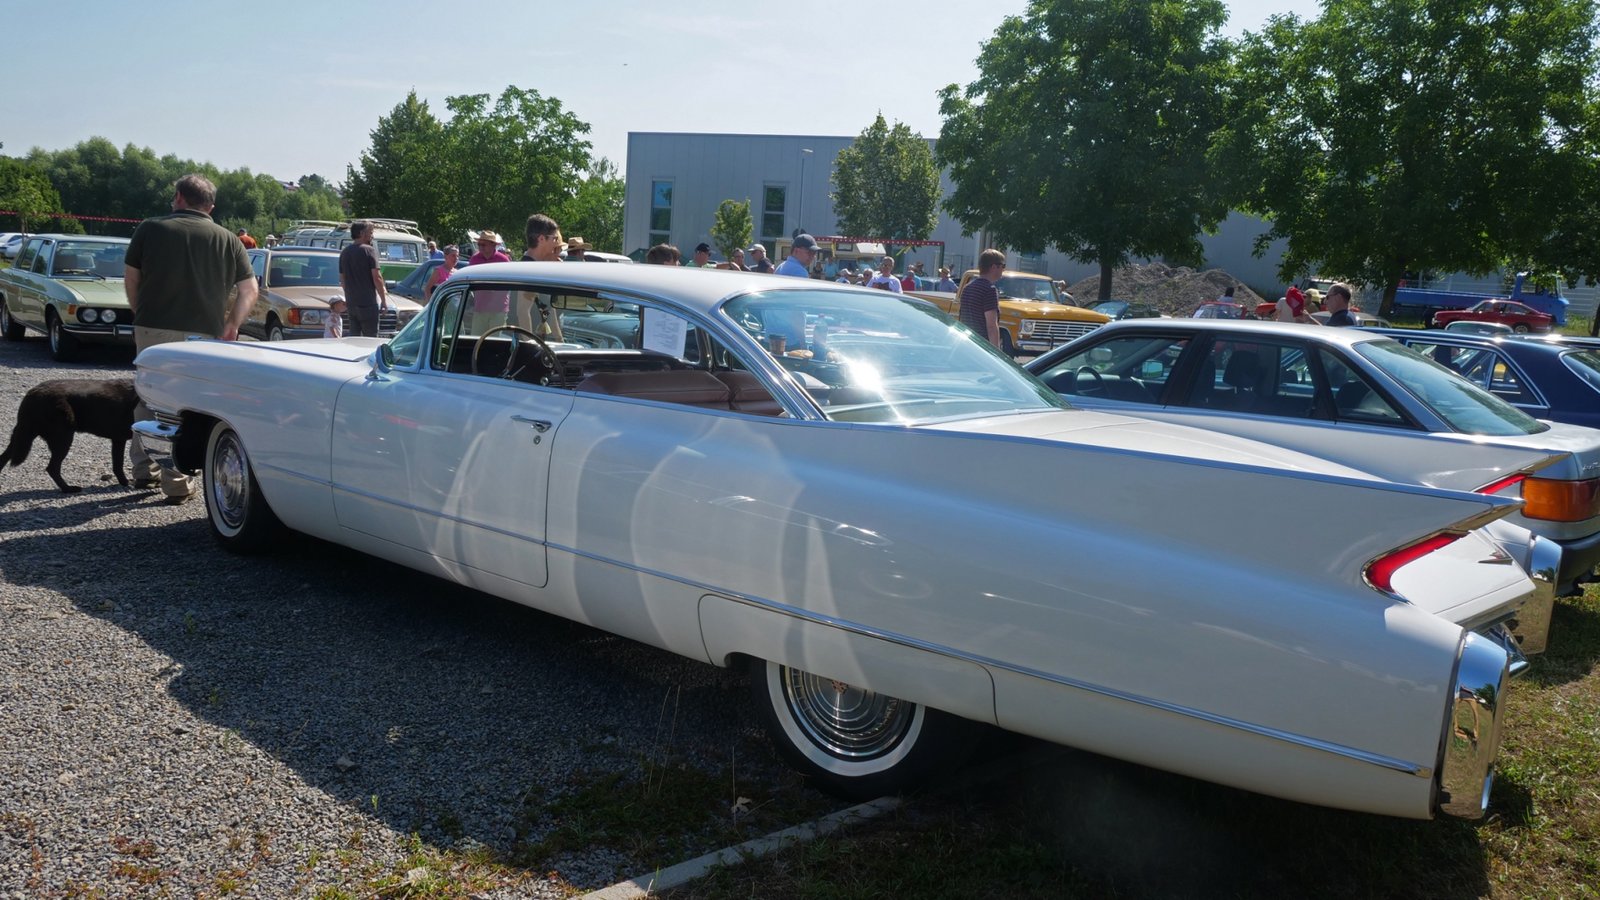 Der weiße Cadillac Coupe mit Baujahr 1960, der in Sersheim zu sehen ist, erreicht eine Höchstgeschwindigkeit von 193 km/h.